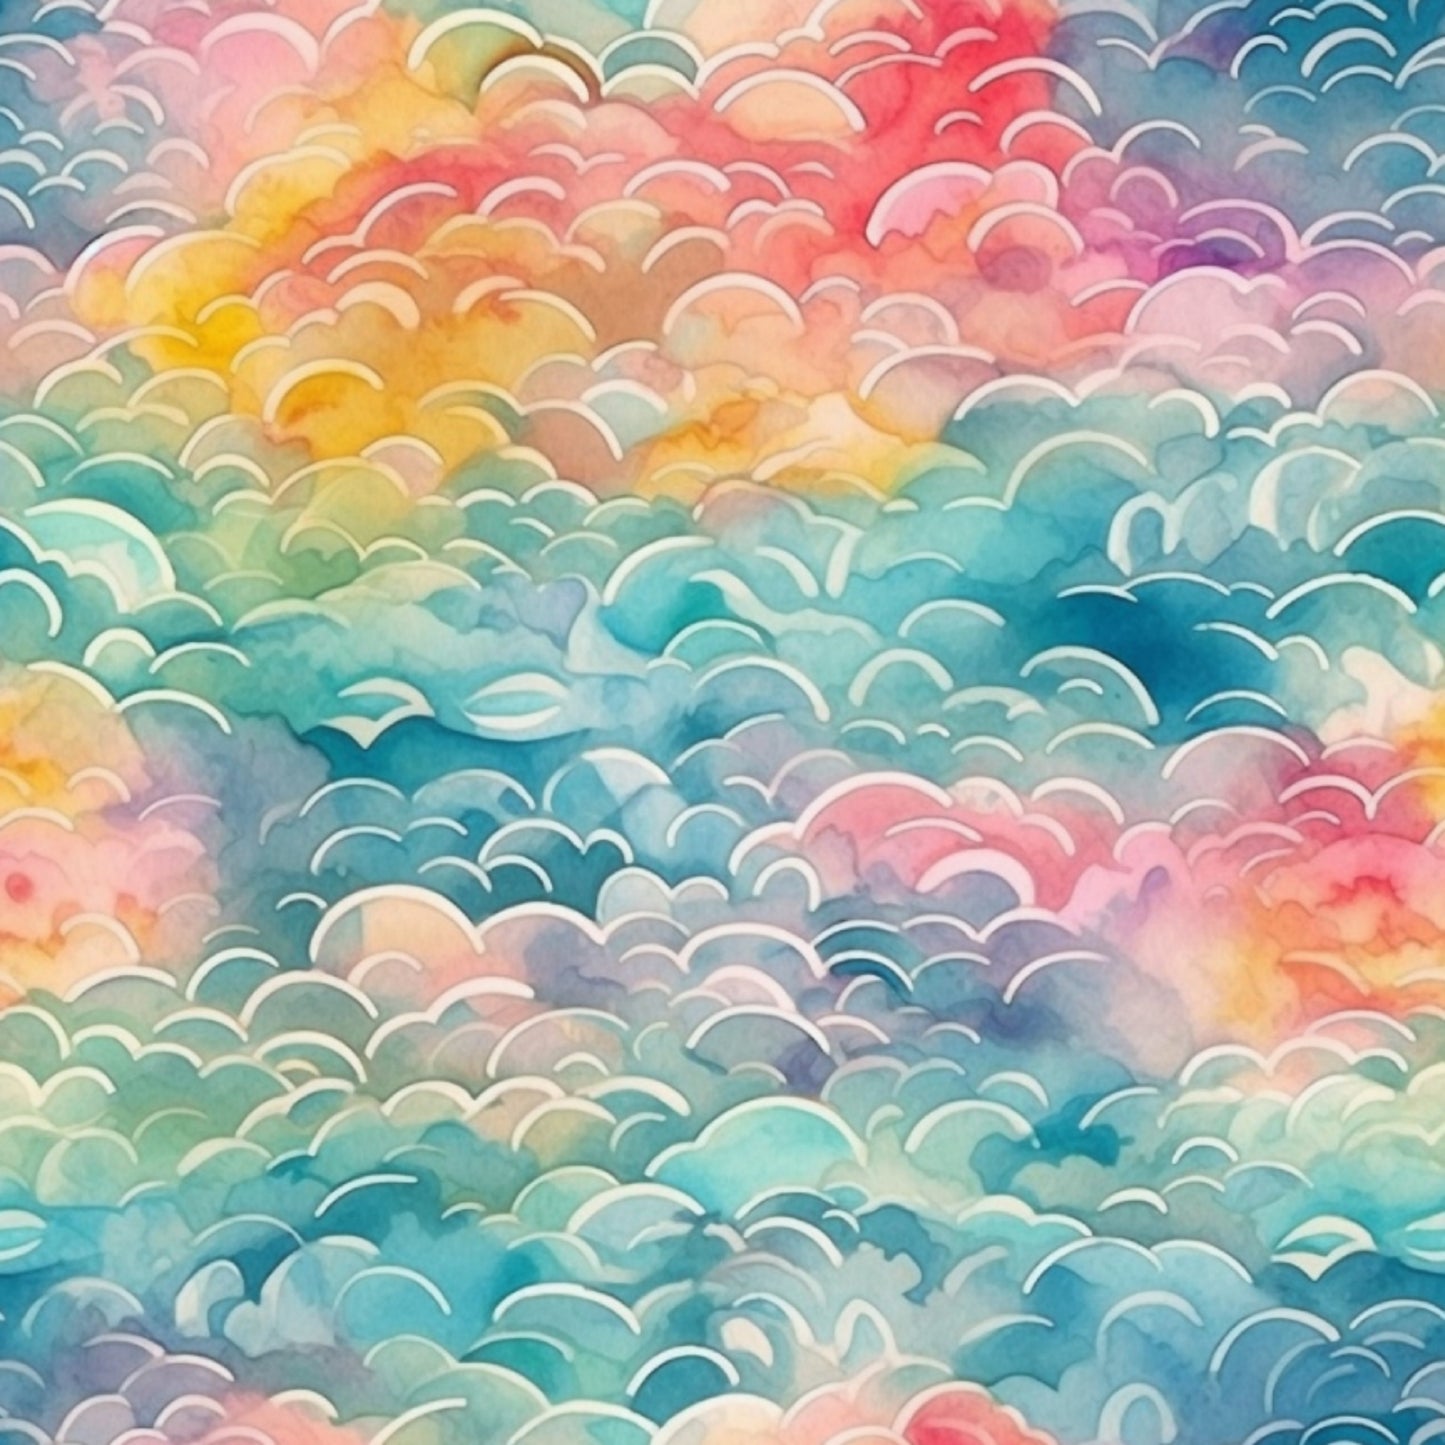 Waves of Clouds Watercolor Waterproof Oxford